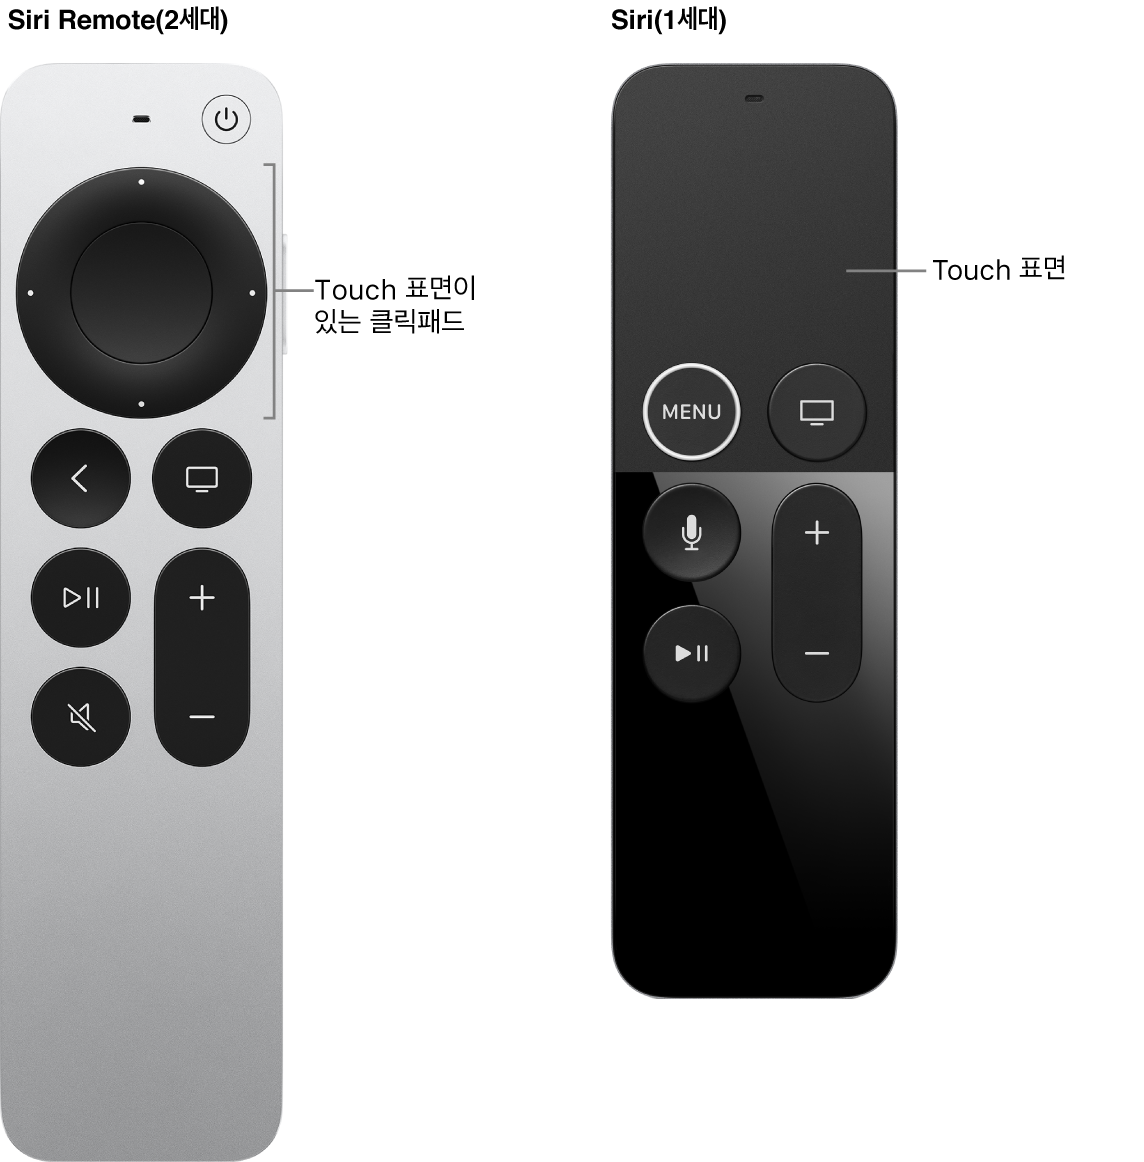 클릭패드가 있는 Siri Remote(2세대) 및 Touch 표면이 있는 Siri Remote(1세대)